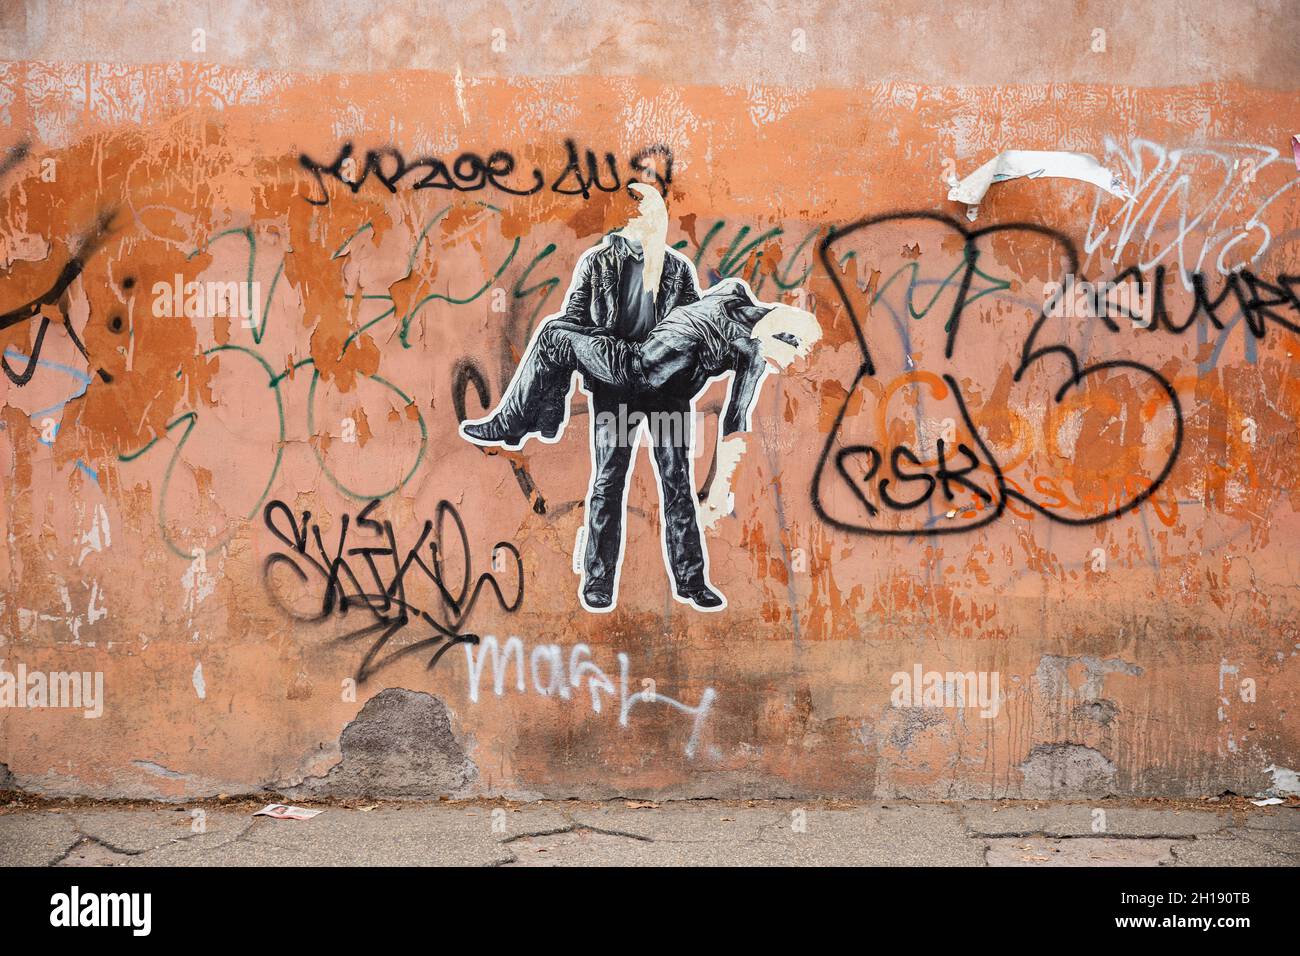 Straßenkunst. Zerrissene, maßgeschneiderte Paste-up-Poster im Stadtteil Trastevere in Rom, Italien. Stockfoto